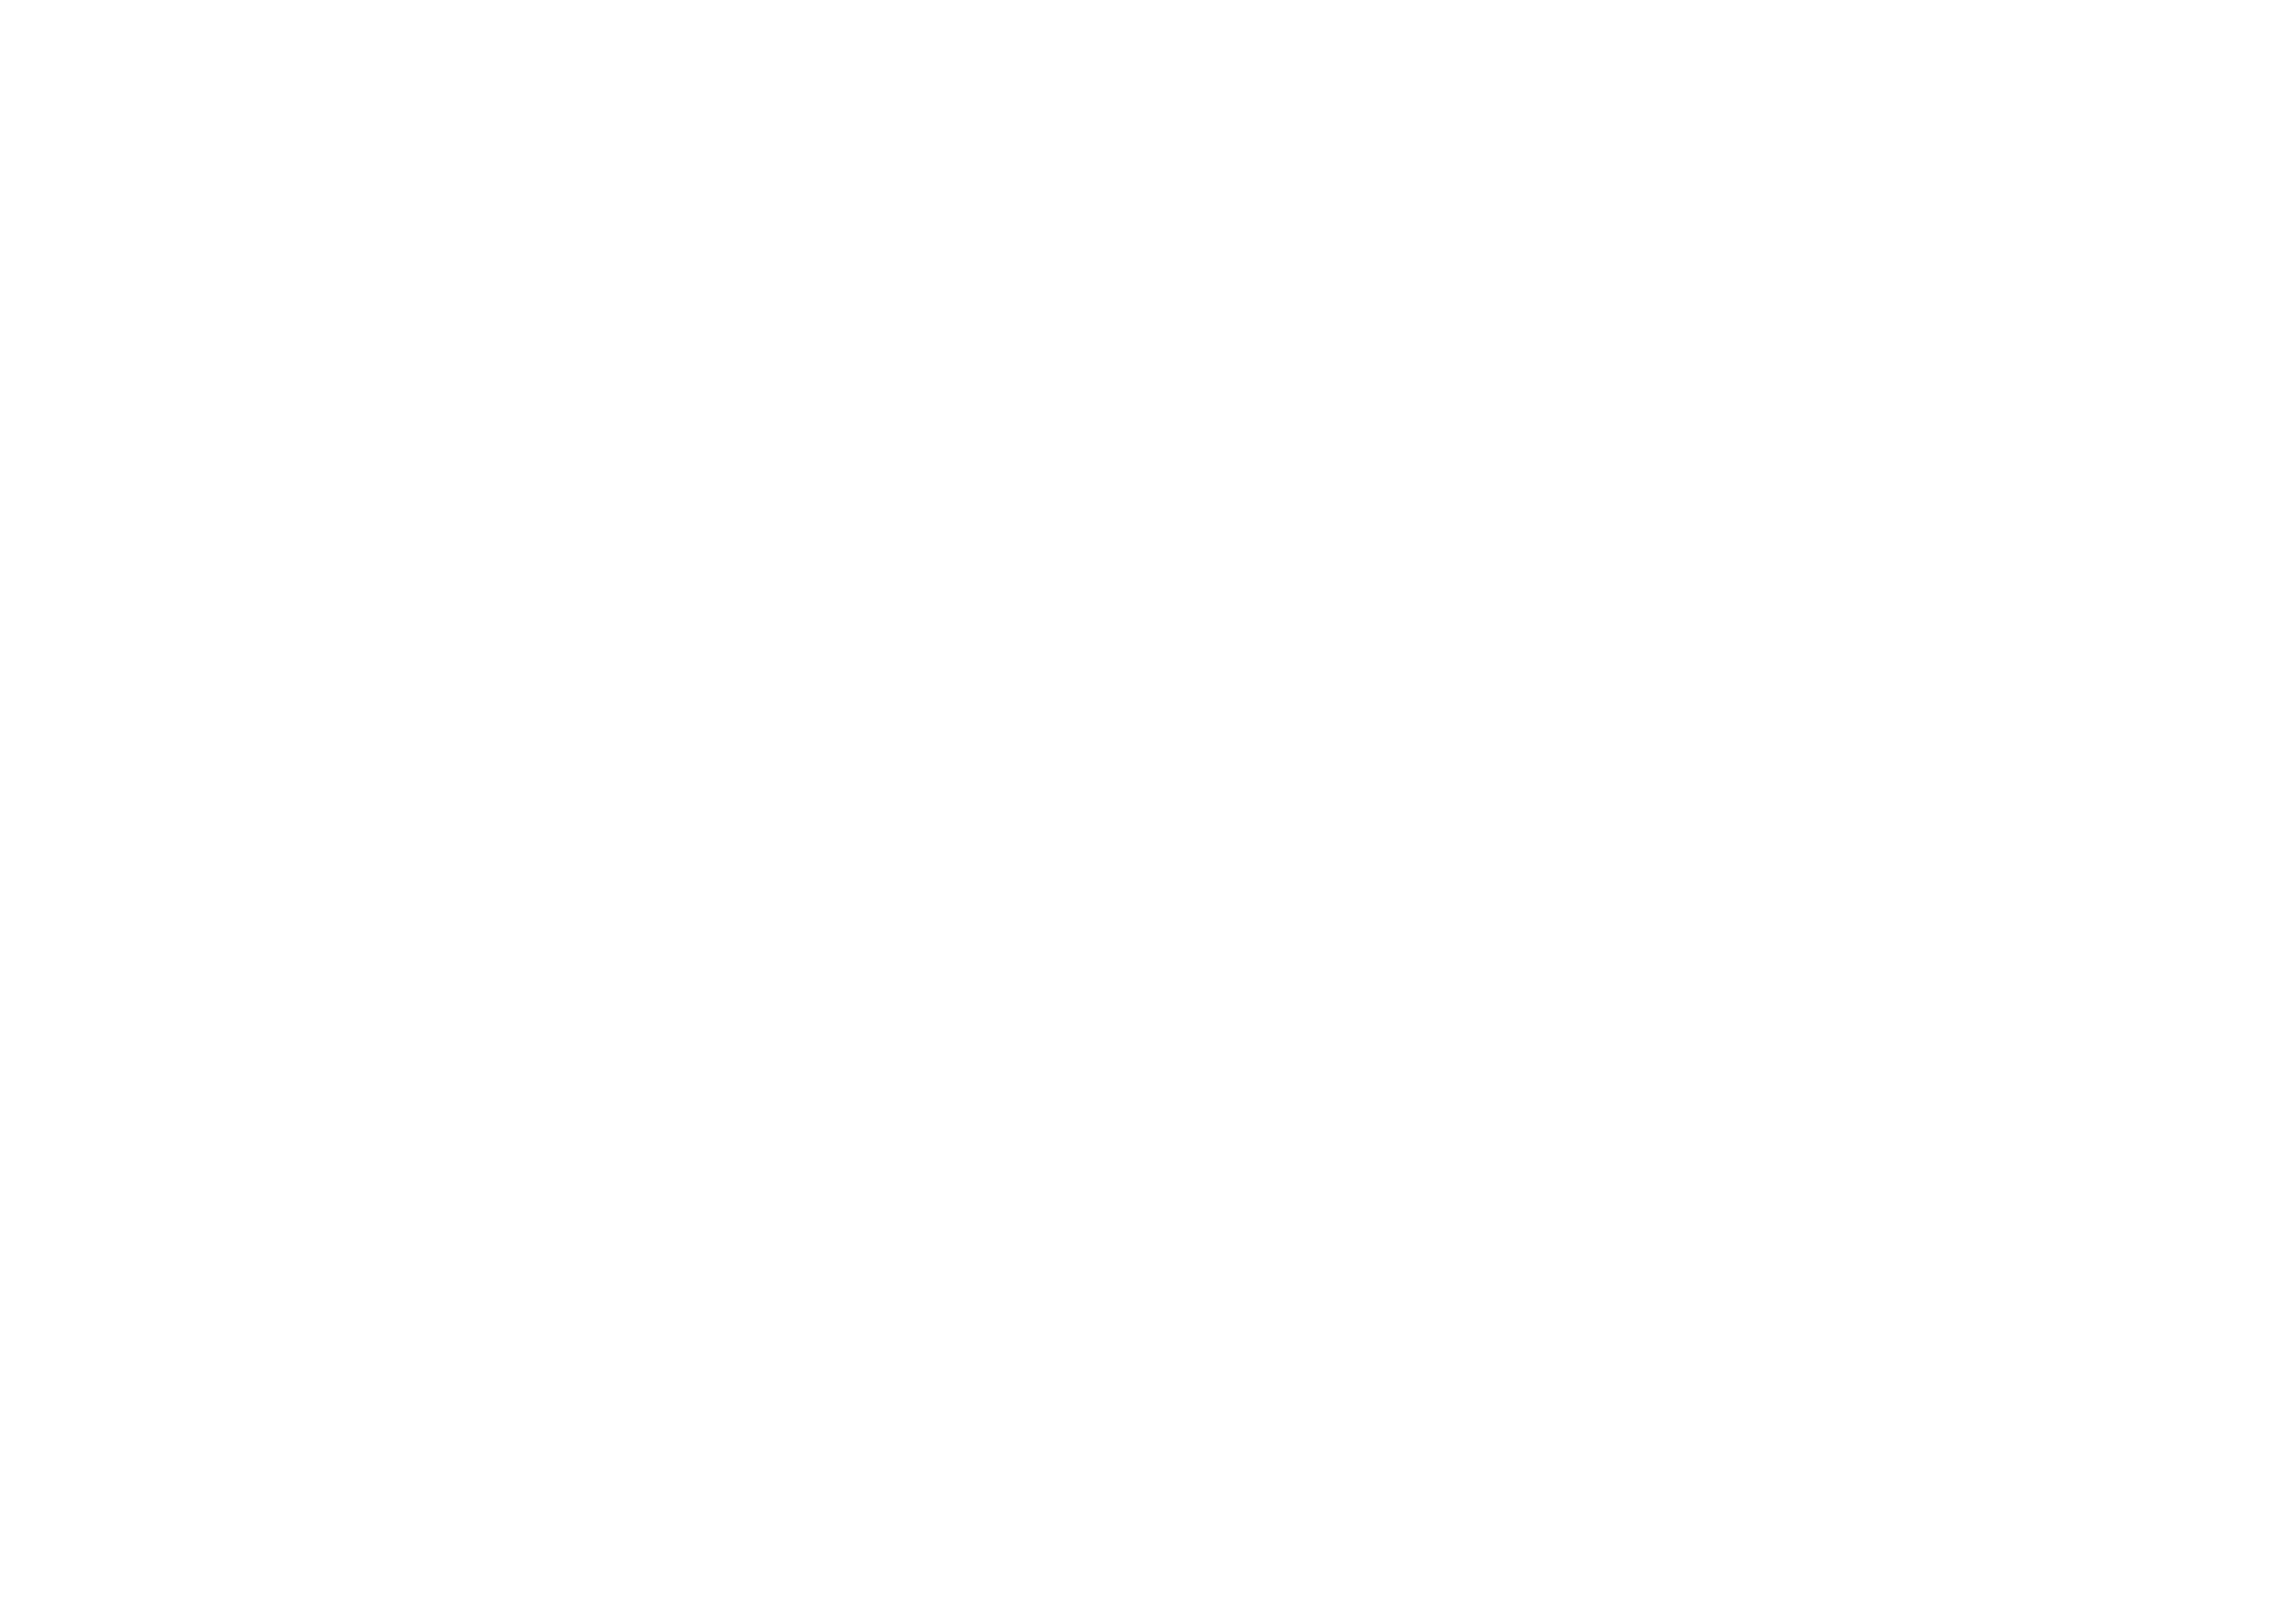 Omnia Club